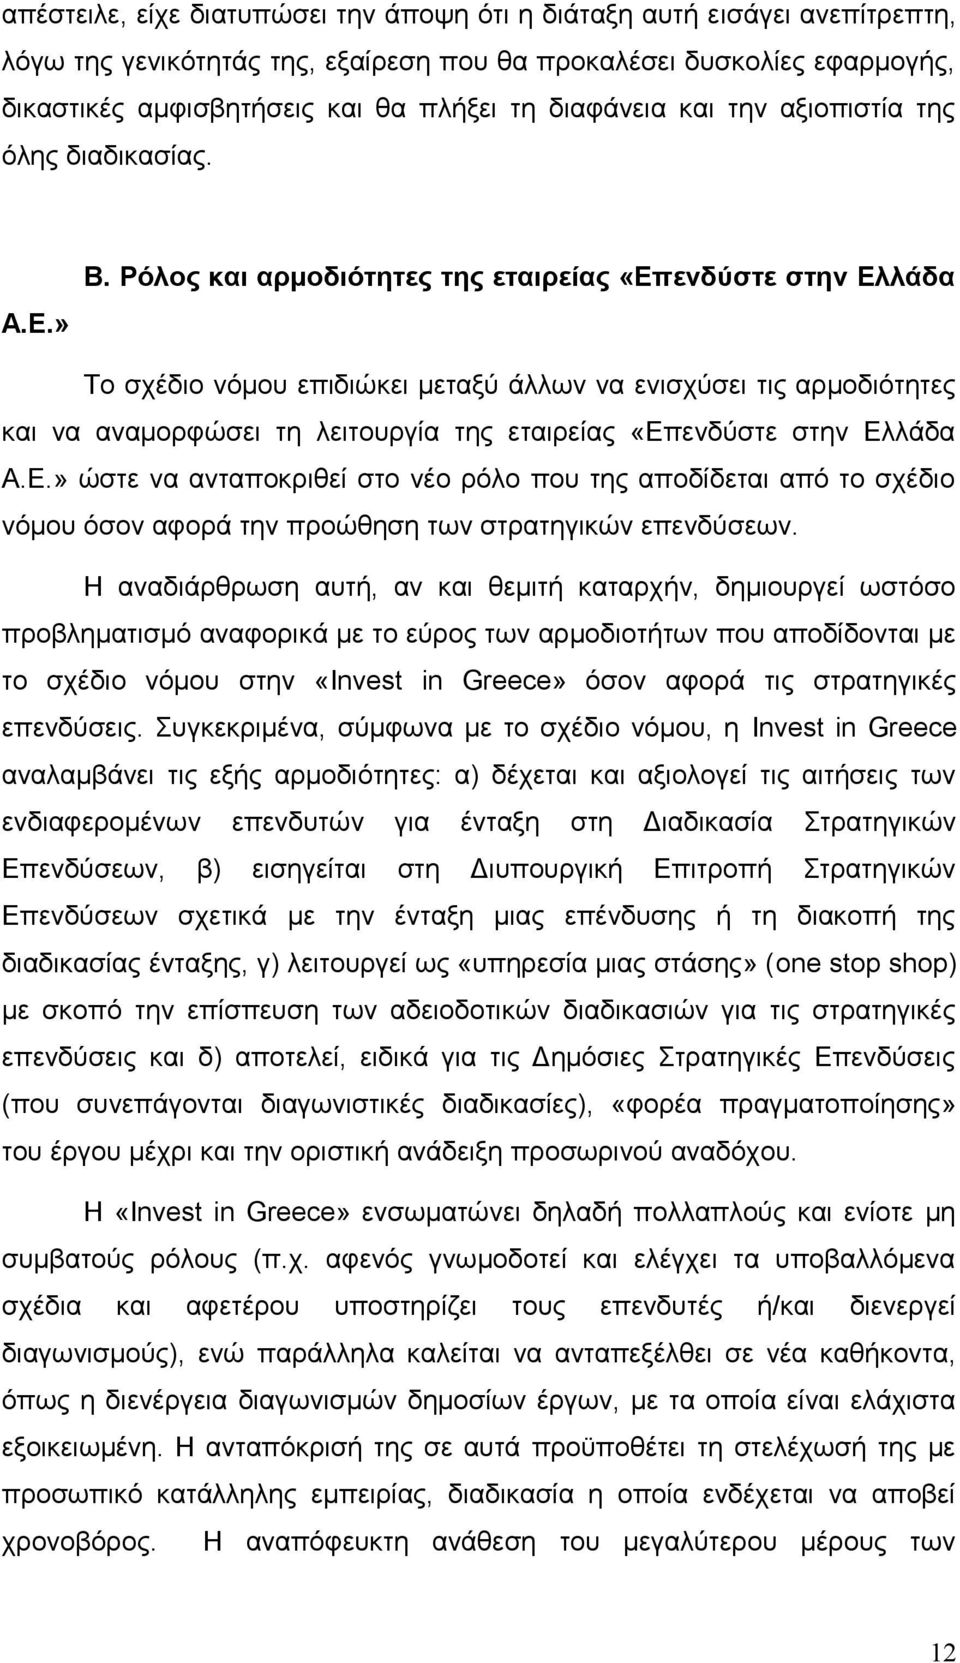 Ρόλος και αρμοδιότητες της εταιρείας «Επενδύστε στην Ελλάδα Το σχέδιο νόμου επιδιώκει μεταξύ άλλων να ενισχύσει τις αρμοδιότητες και να αναμορφώσει τη λειτουργία της εταιρείας «Επενδύστε στην Ελλάδα